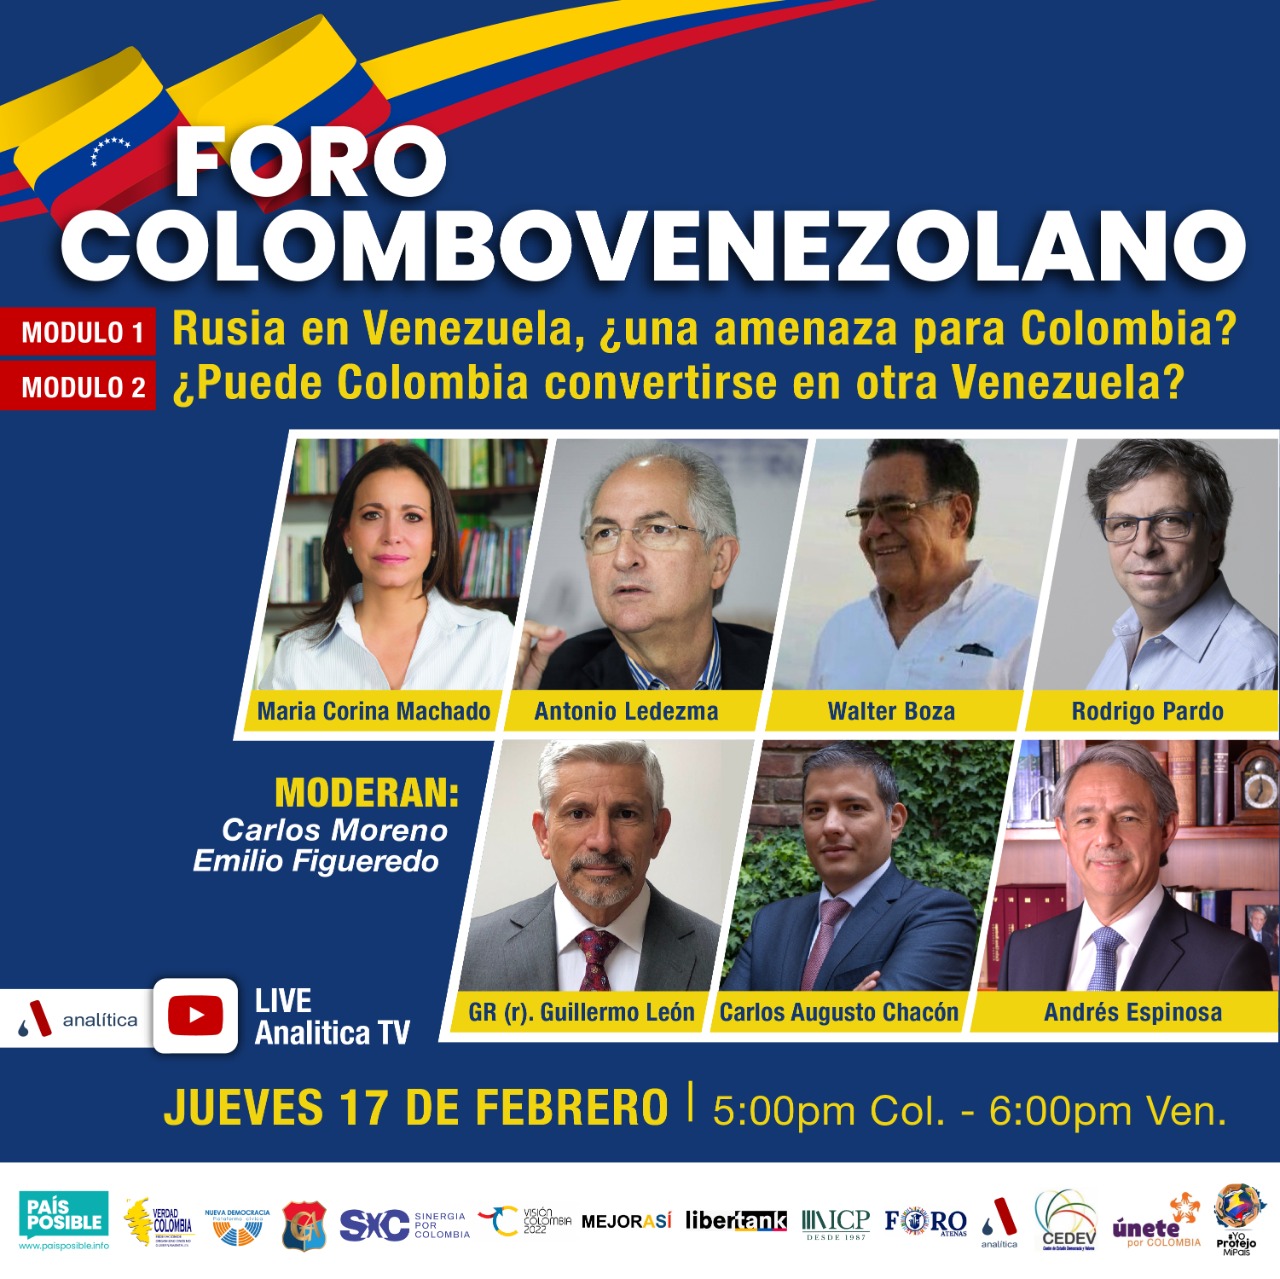 María Corina: Victoria de Petro integraría a Colombia y Venezuela en una sola zona criminal